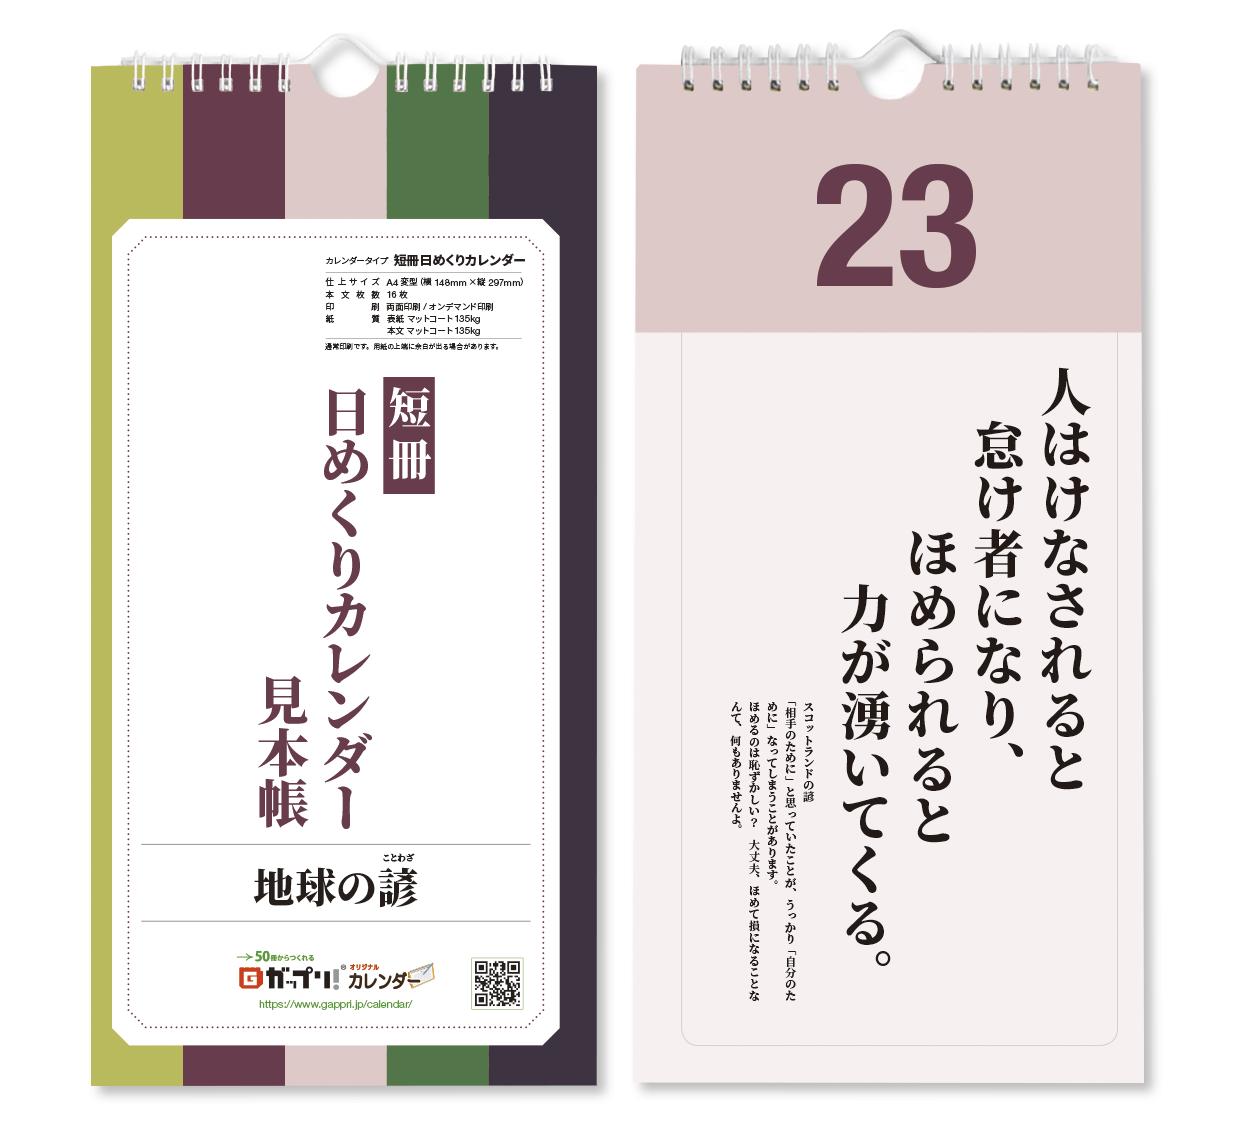 日めくり 短冊日めくりカレンダー見本帳 オリジナルカレンダーの印刷 作成 製作なら ガップリ